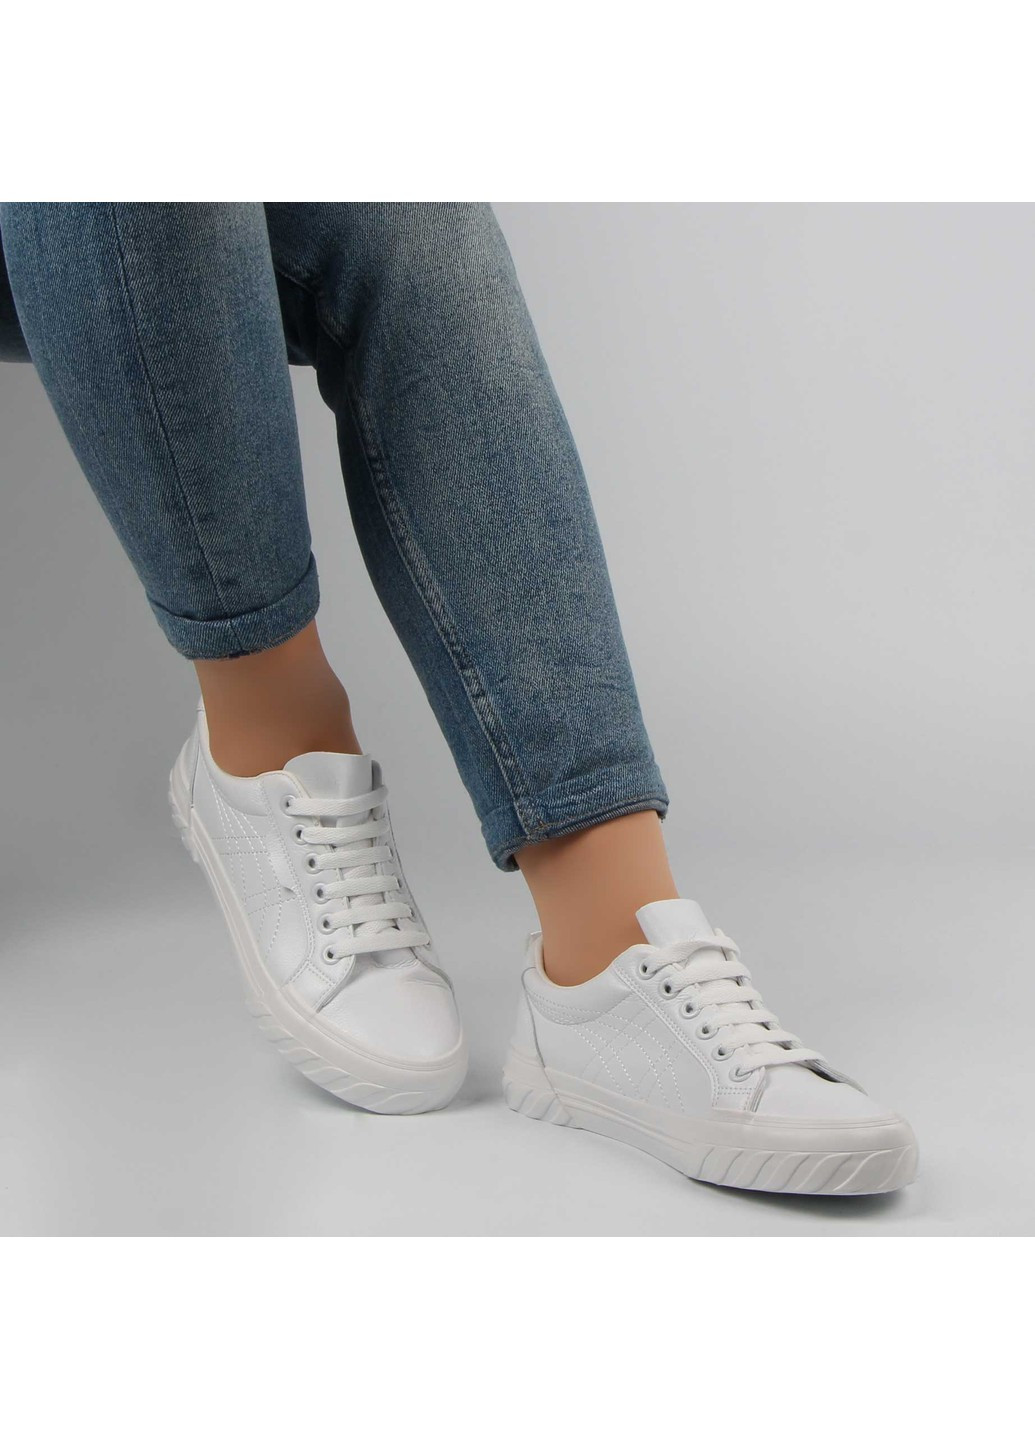 Белые демисезонные женские кроссовки 197302 Renzoni